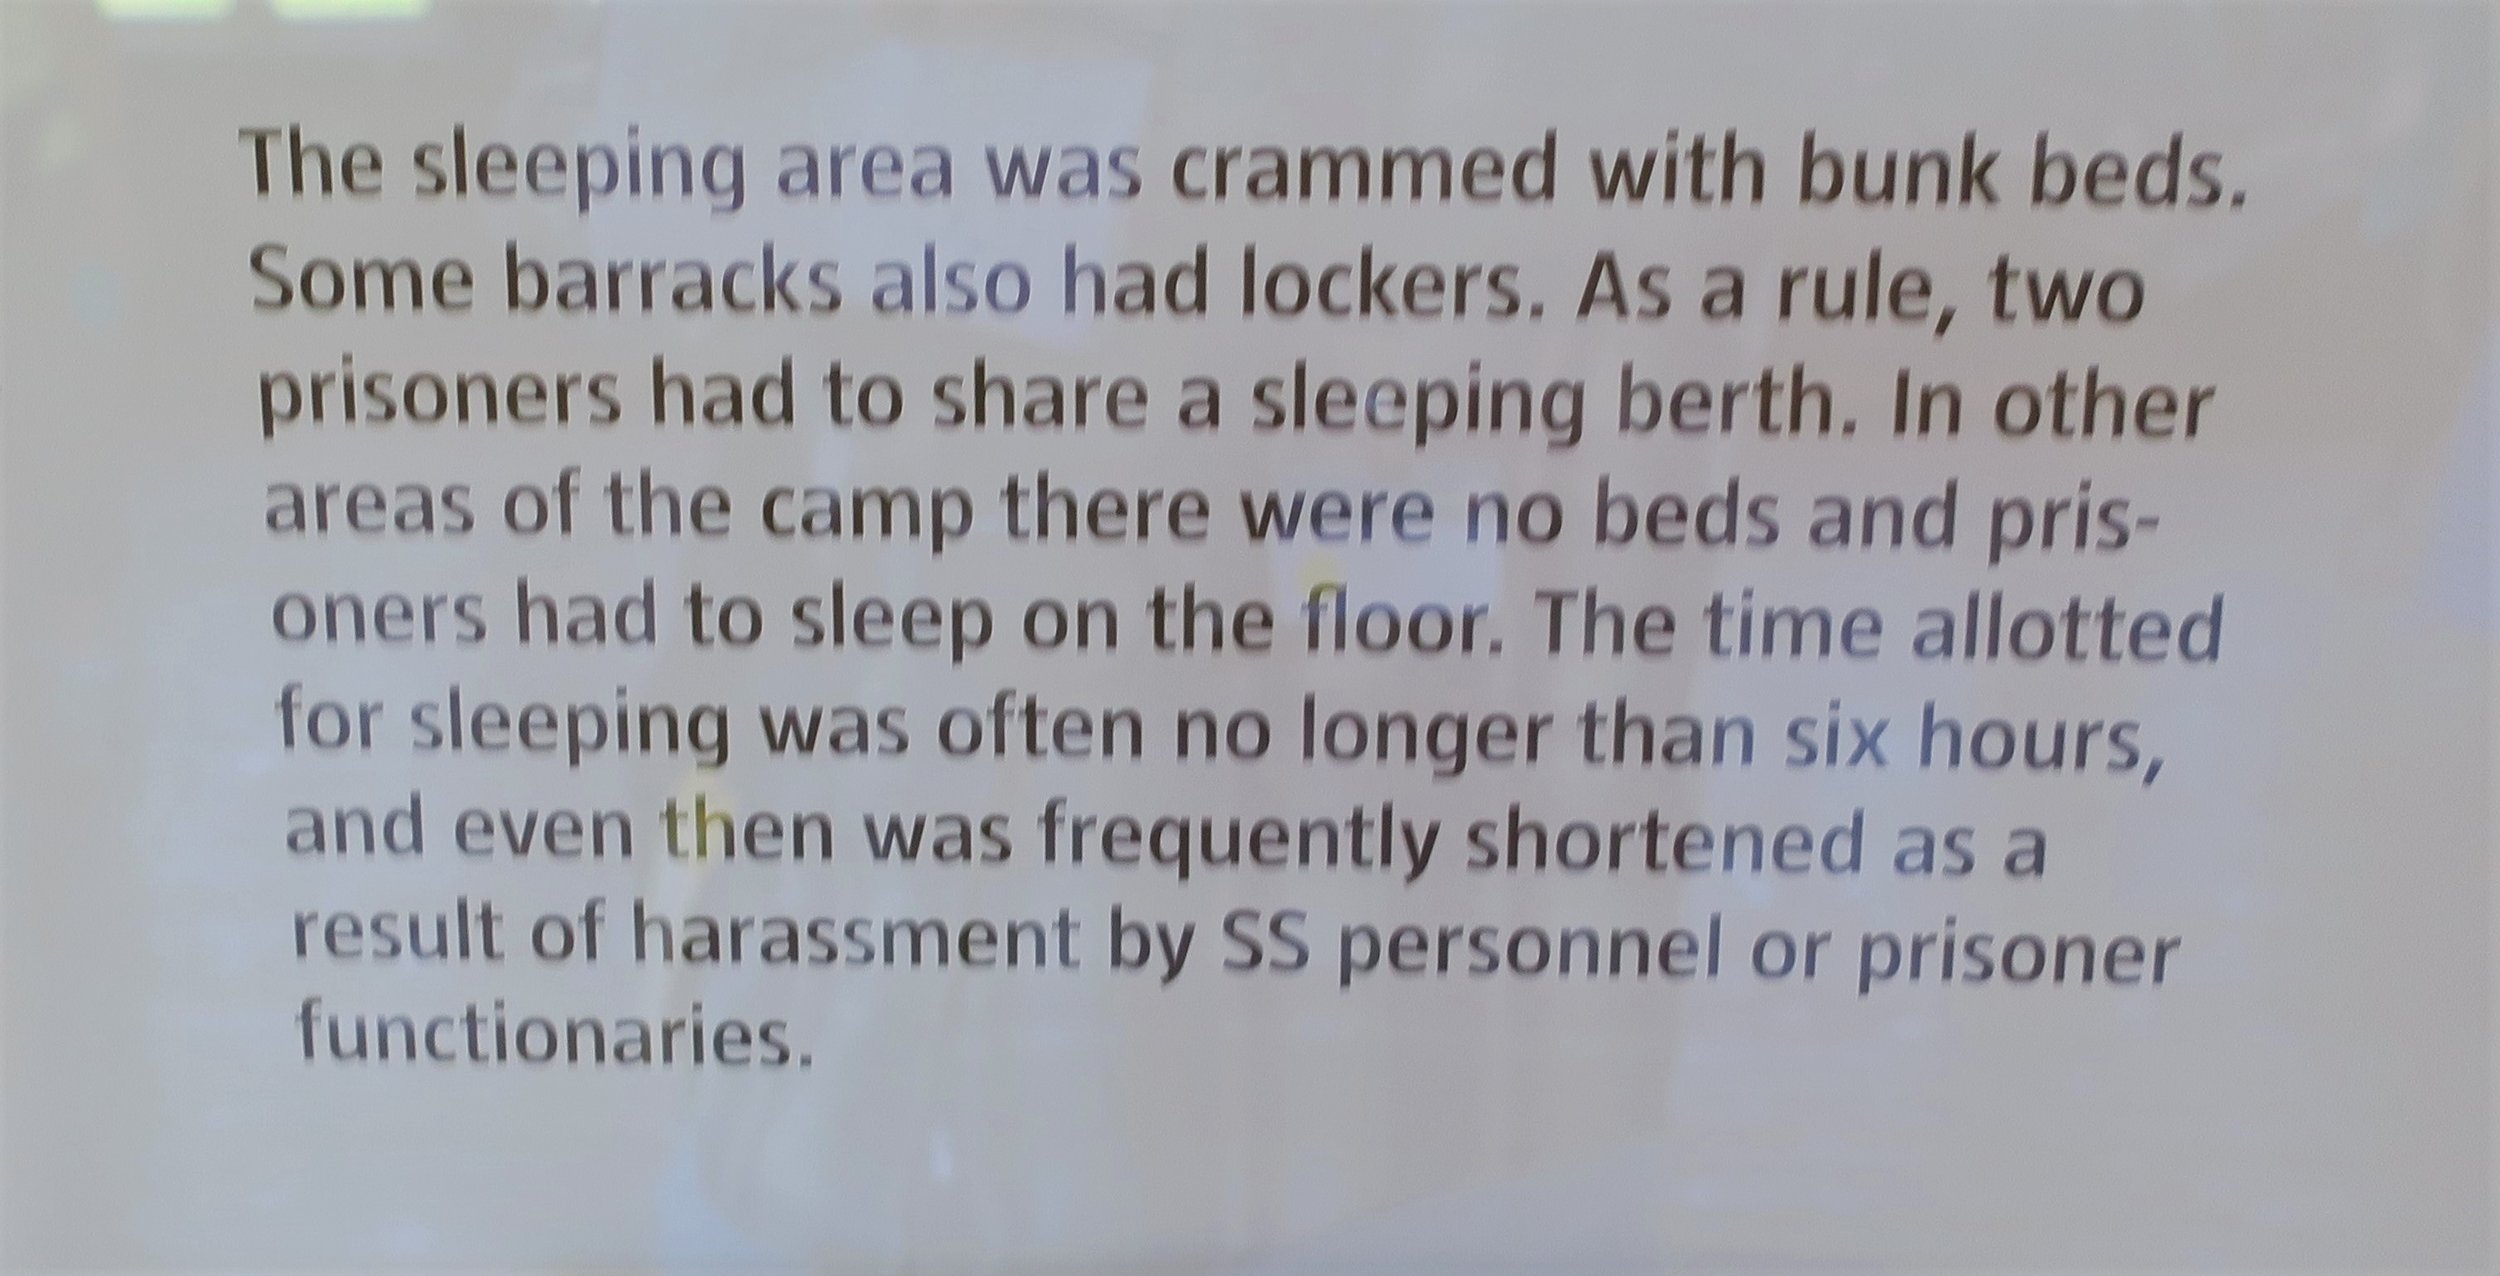 Descriptive sign about barracks conditions.